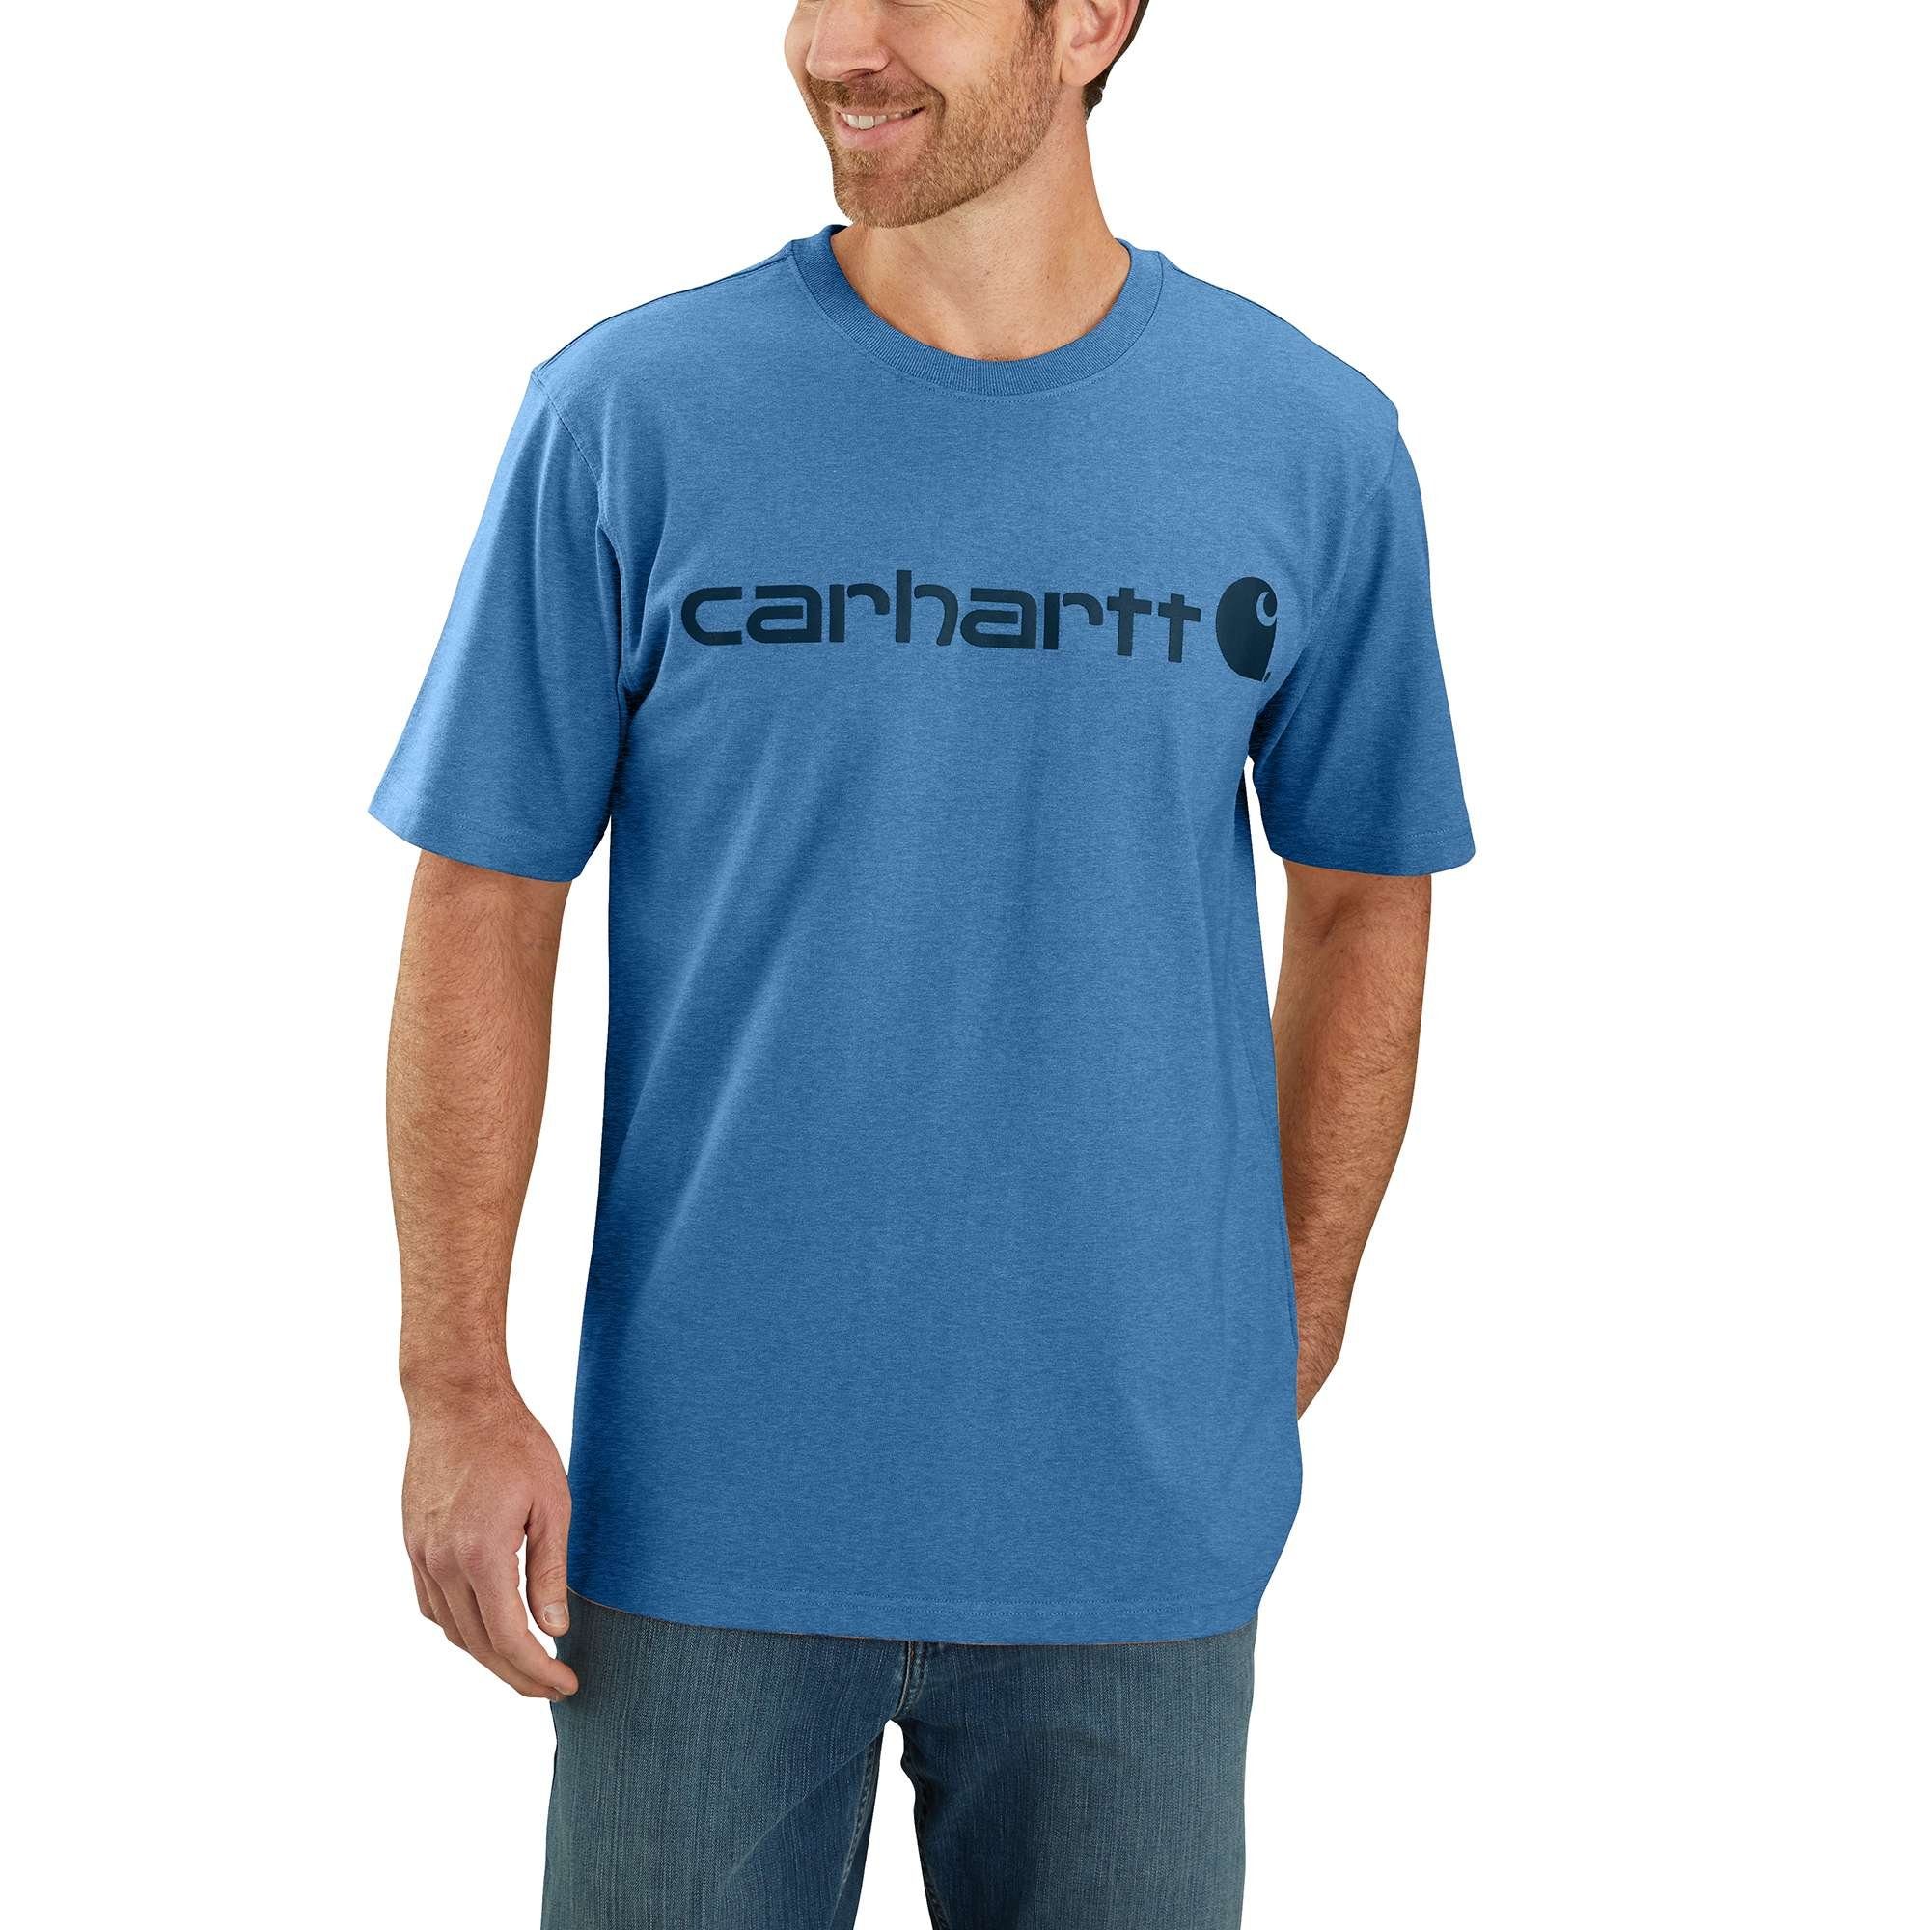 Carhartt T-Shirt Carhartt T-Shirt Herren Relaxed Graphic heather Heavyweight Fit Adult Short-Sleeve coastal Logo